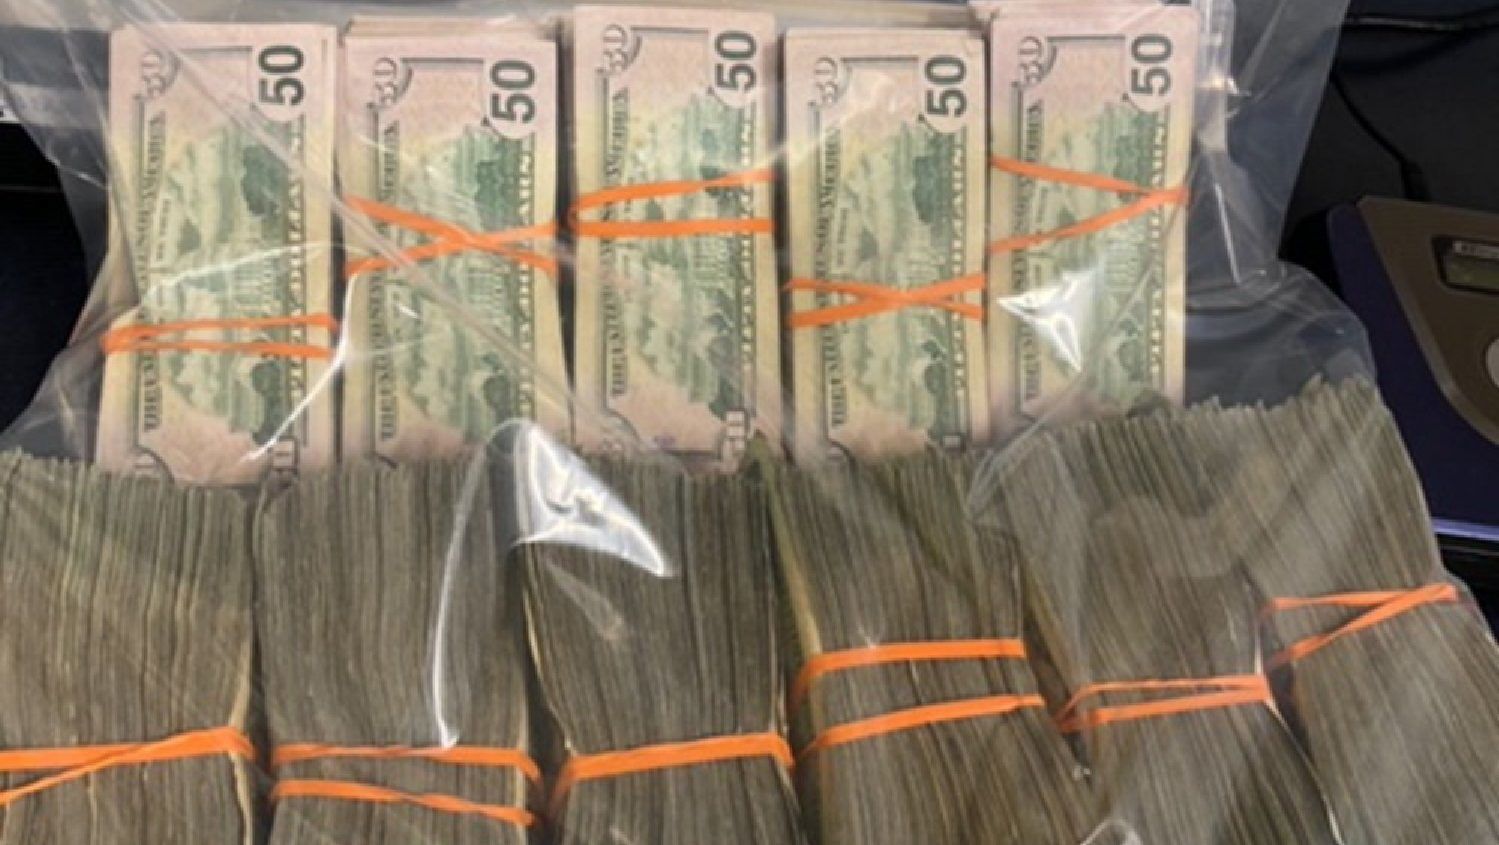 Egy 19 éves fiú 43 millió forintnyi dollárt talált egy zacskóban az ATM-nél, leadta a rendőrségen